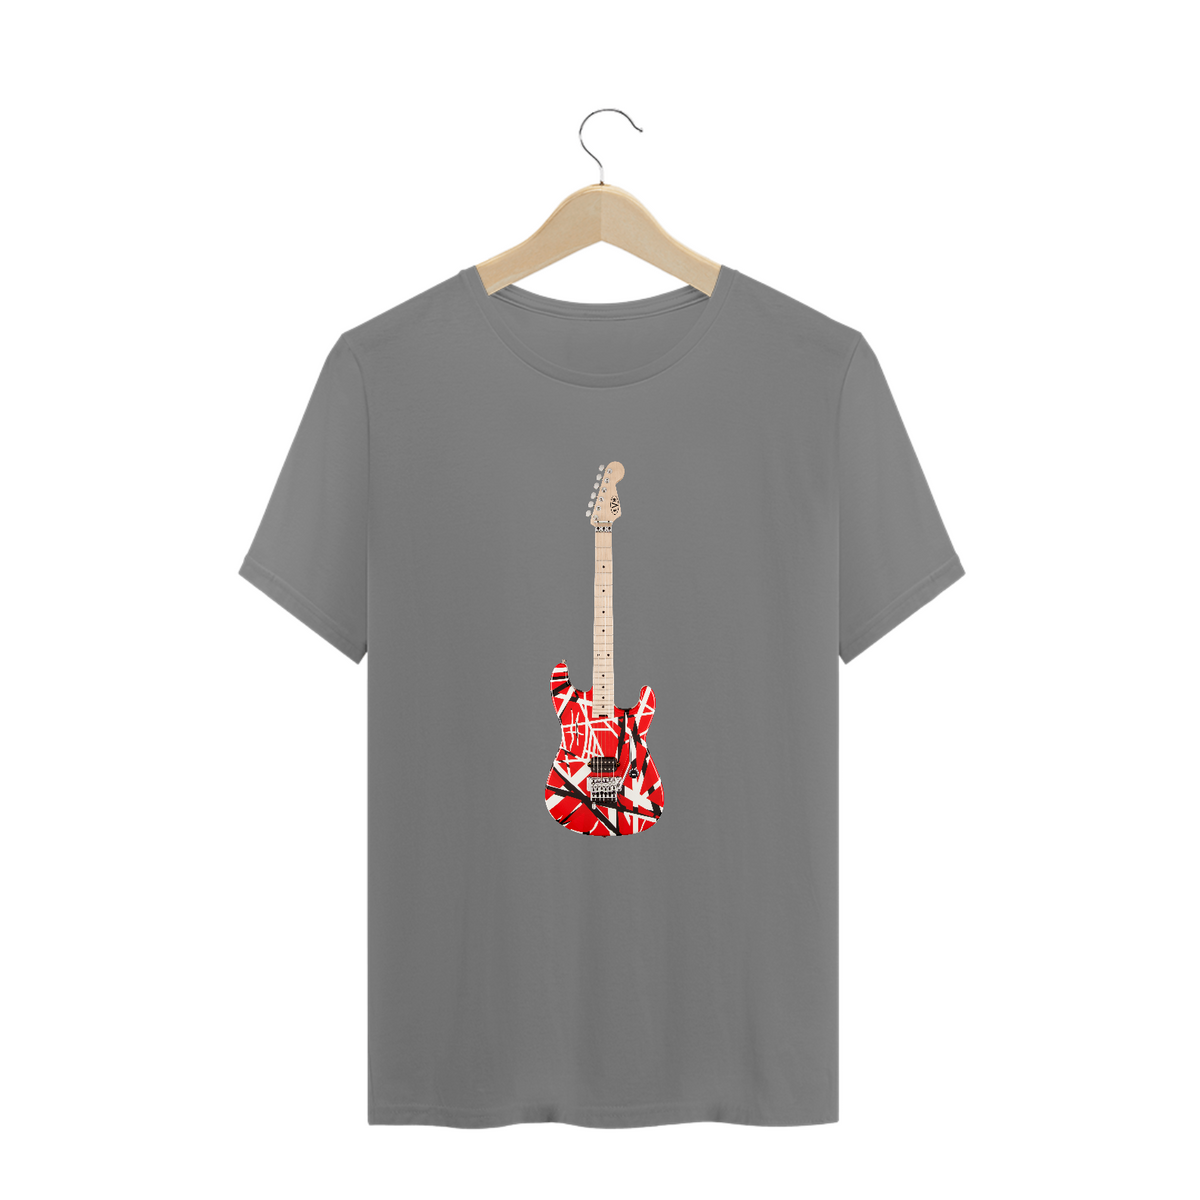 Nome do produto: Guitarra EVH Striped Series Red Black White